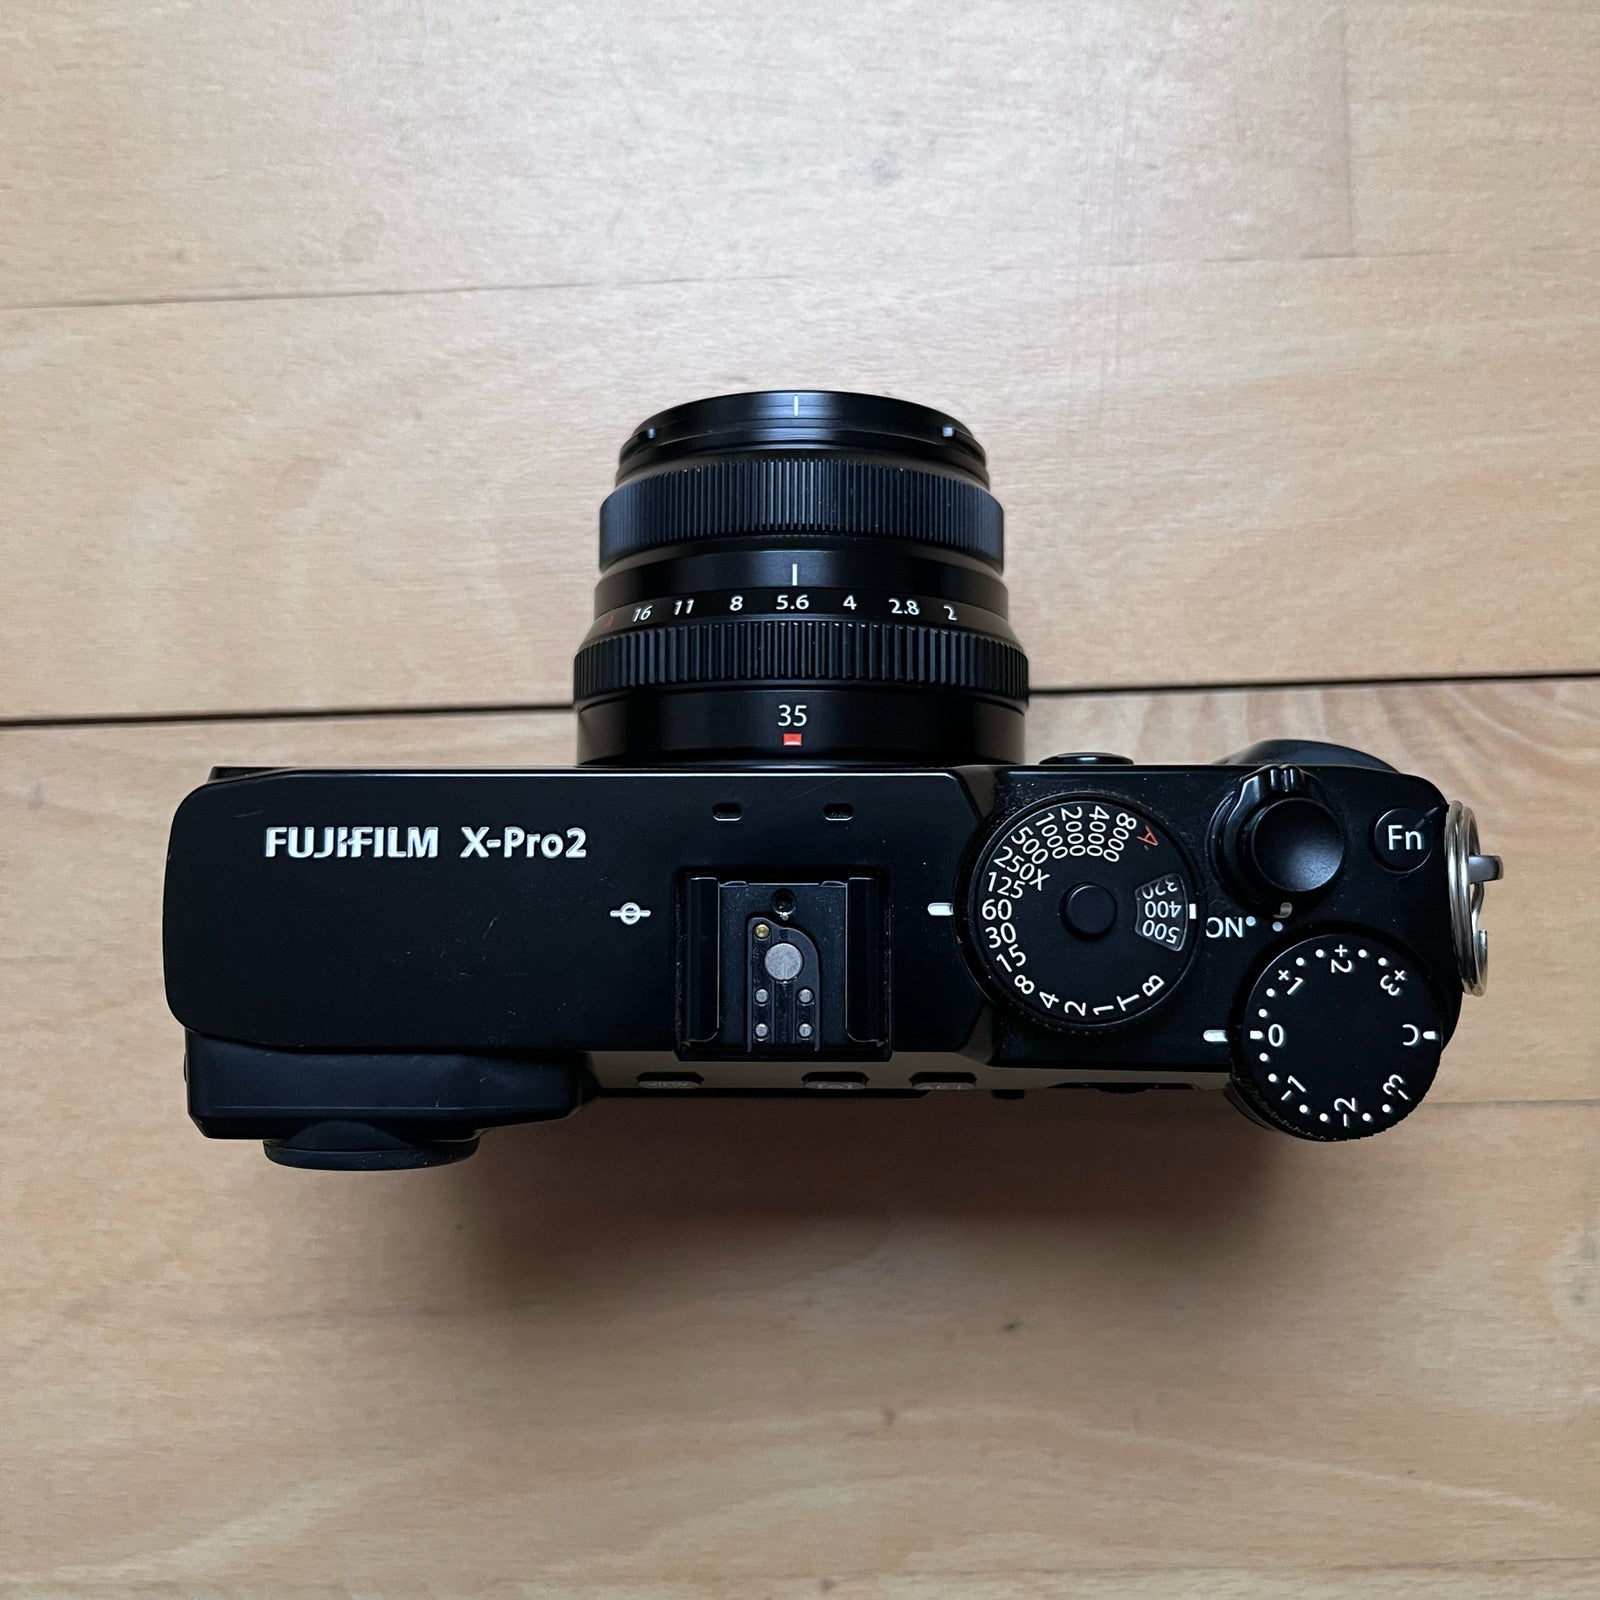 Fuji, Fujifilm X-Pro 2, 24.3MP X-Trans CMOS 3 Sensor